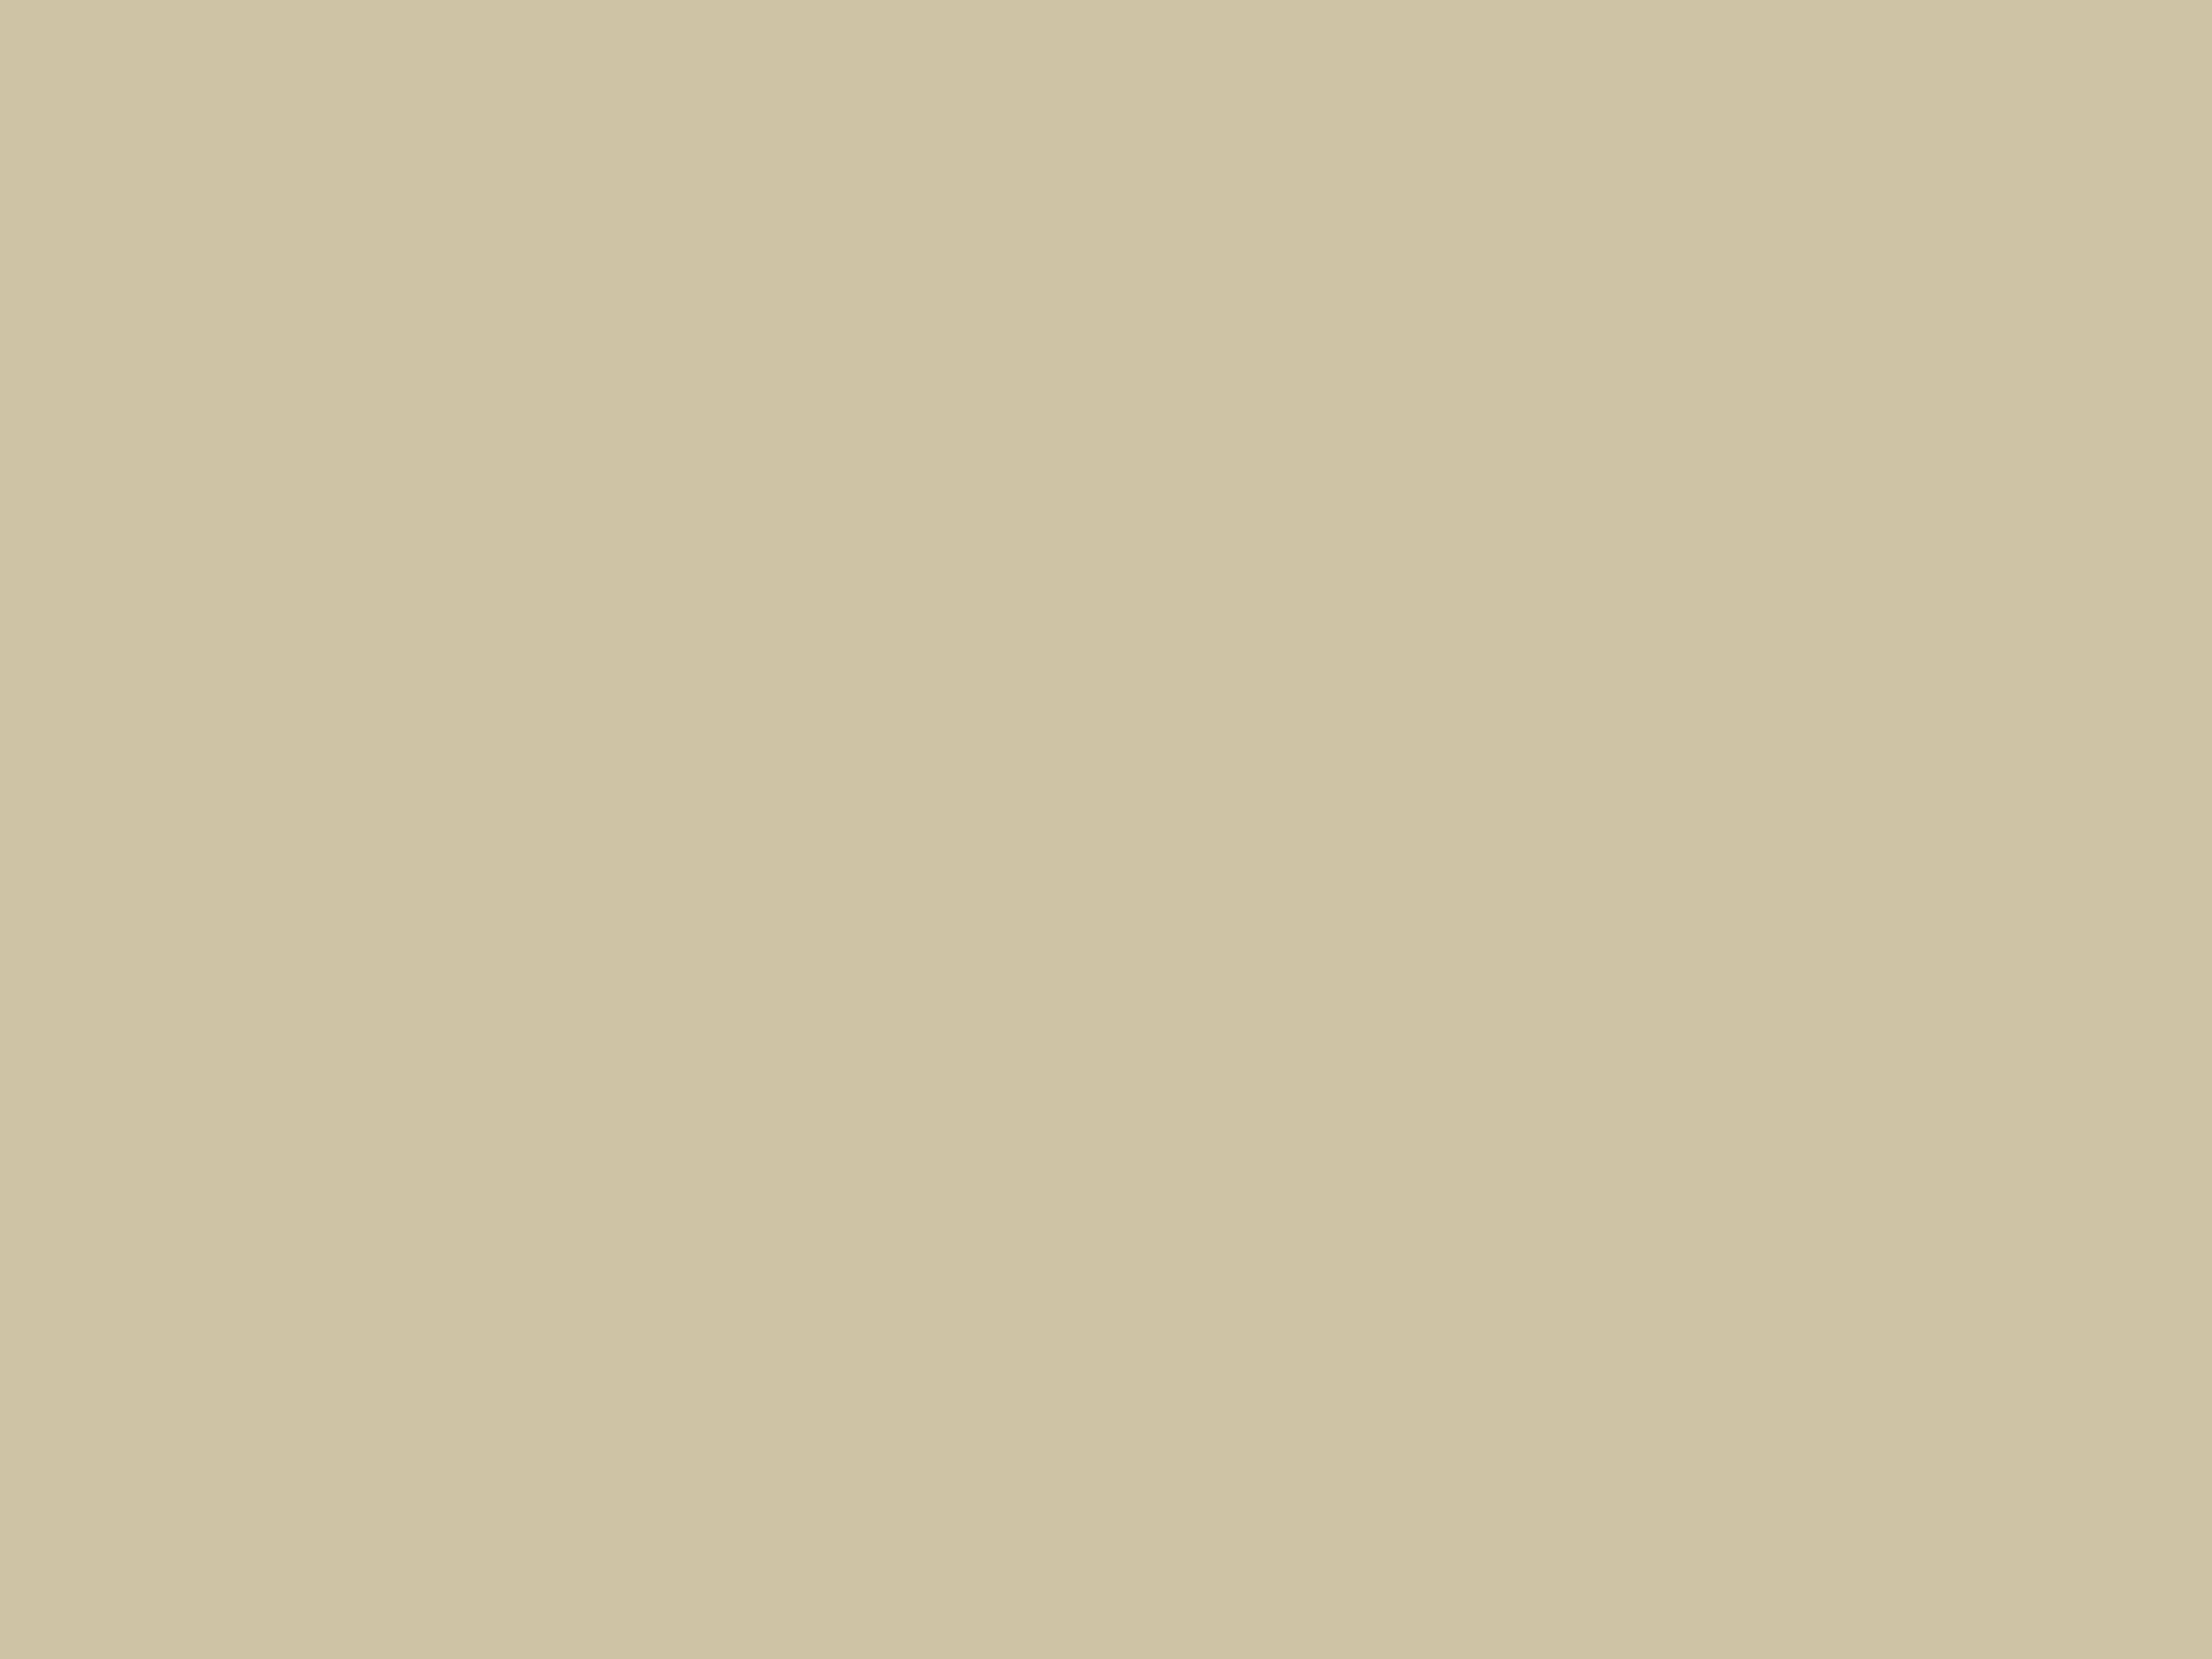 Штелин-Градицци (художники), Ф. Мелиссино (гравер). Фейерверк в Петербурге 10 июня 1762 года. Конец XVIII — начало XIX века